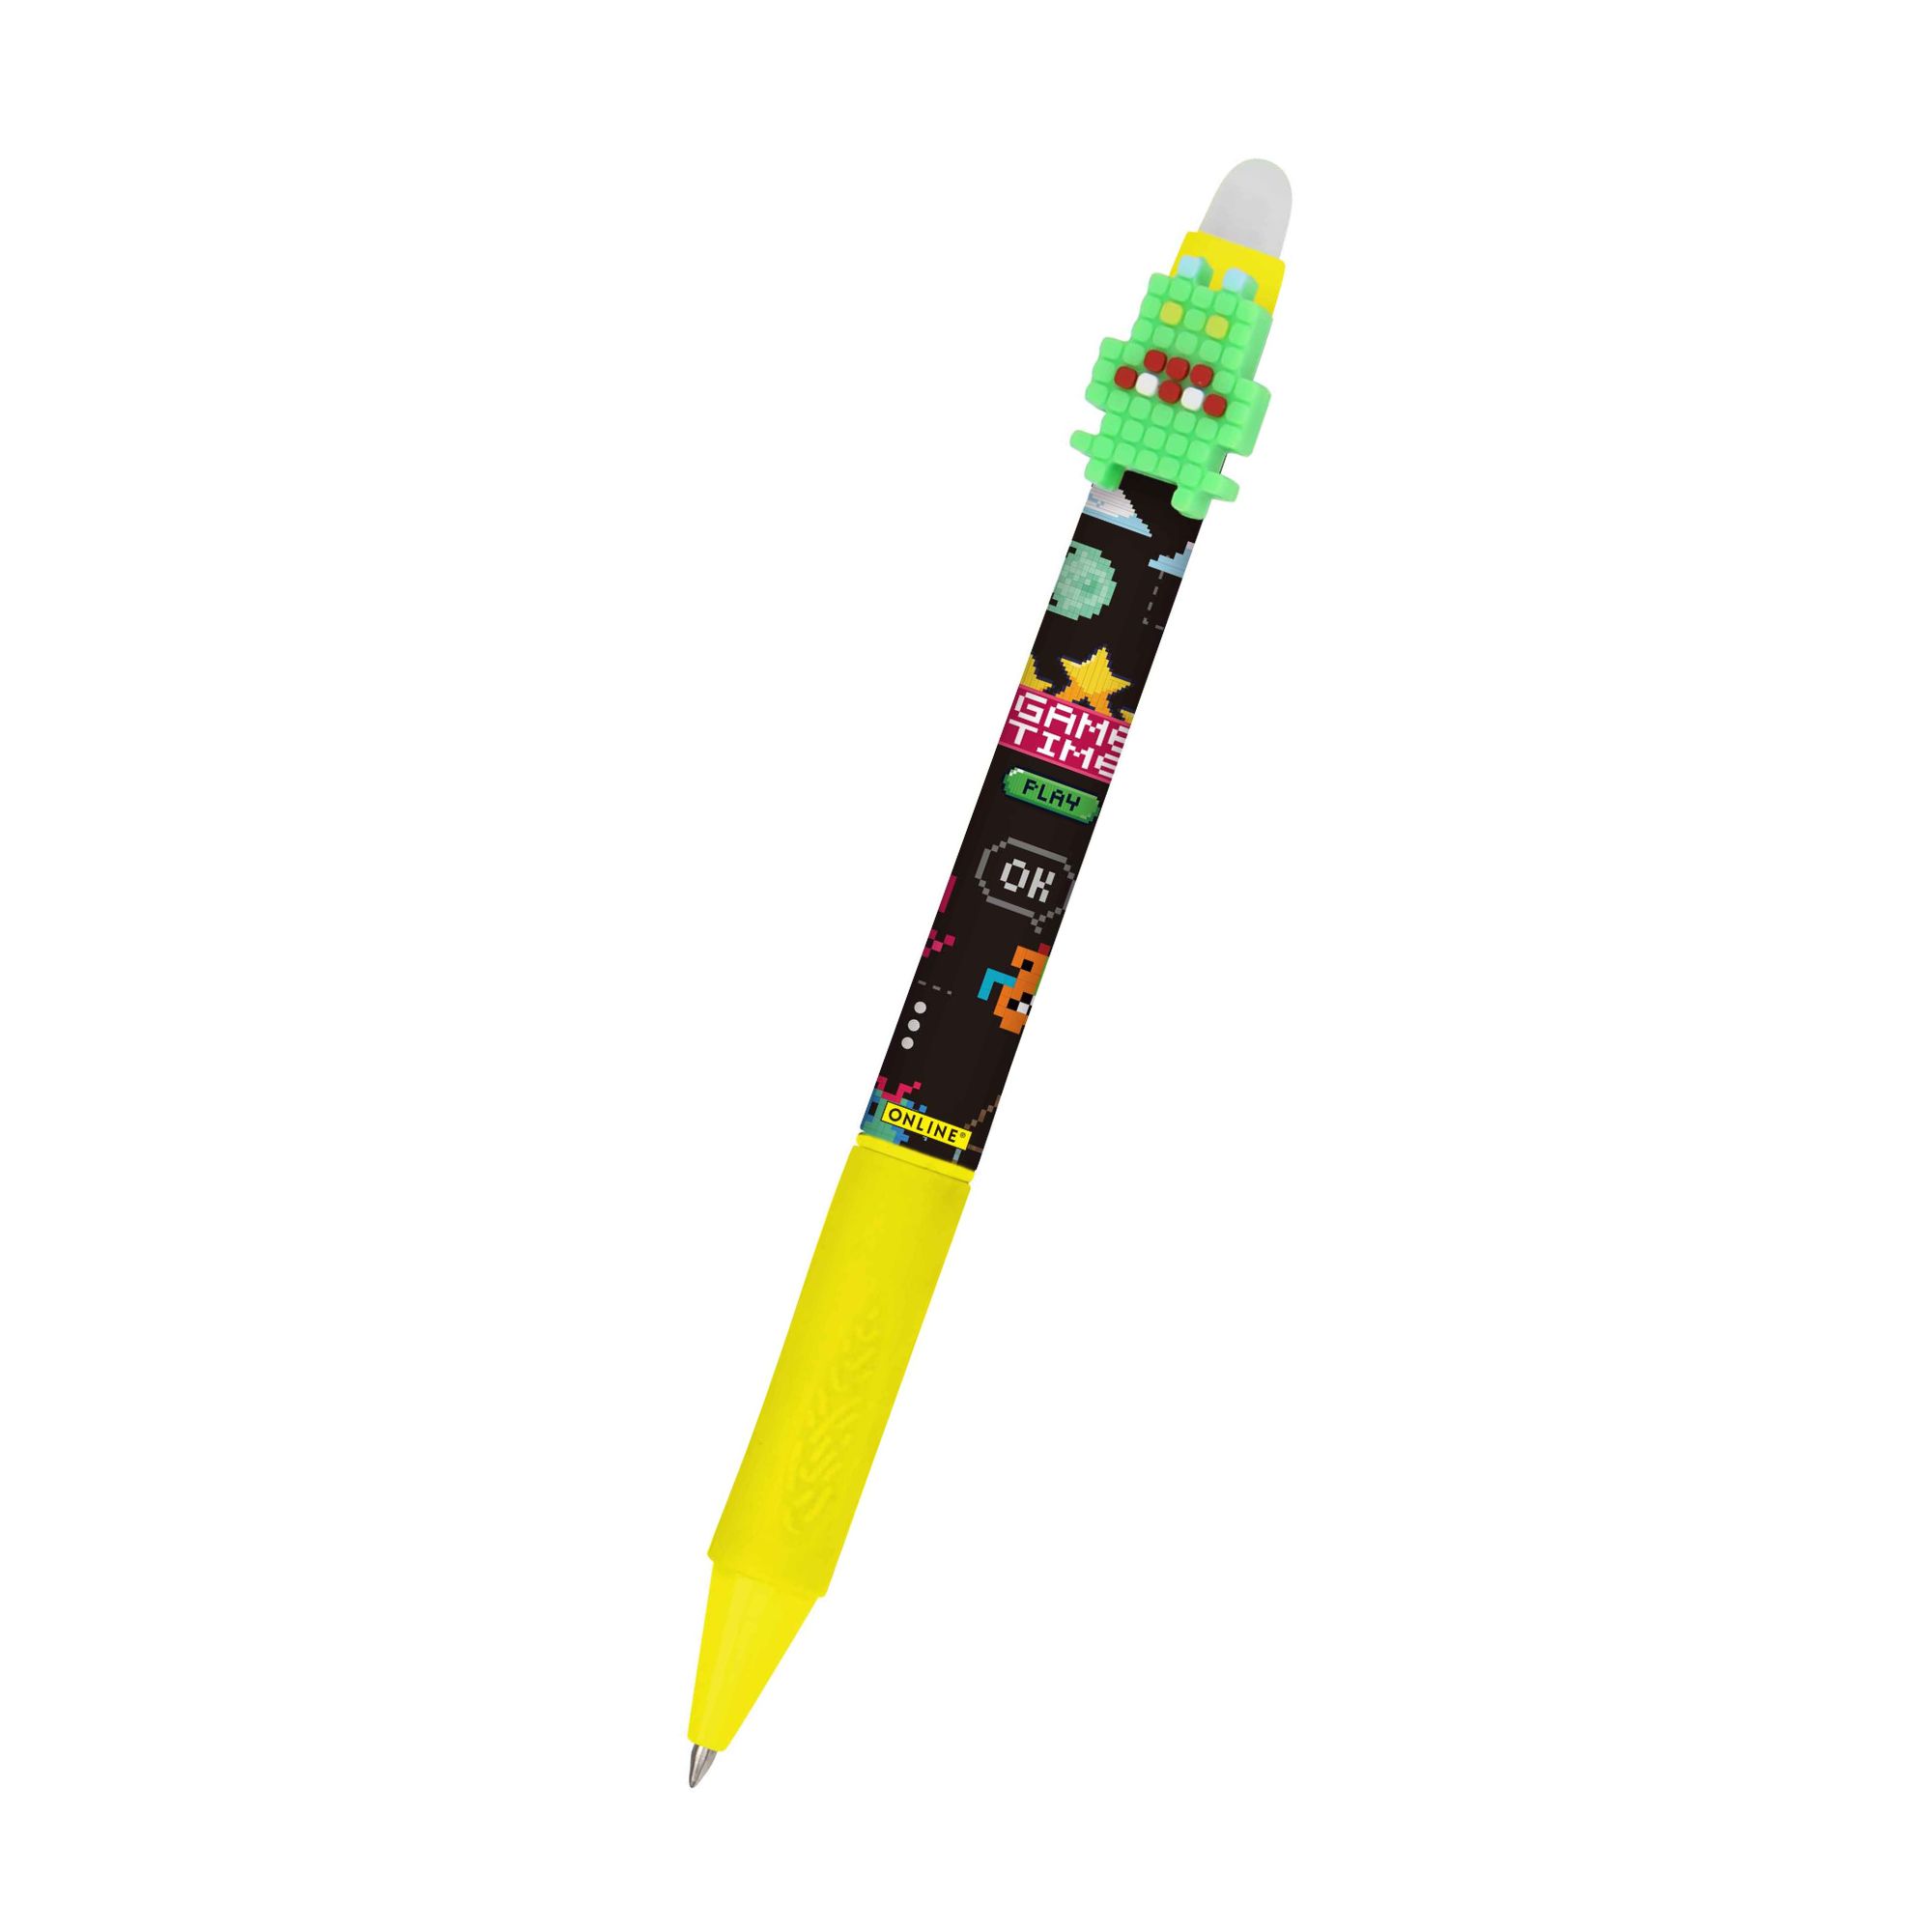 Unser radierbarer Gelschreiber magiXX Fun der Serie Cool für Kinder mit spannenden Designs